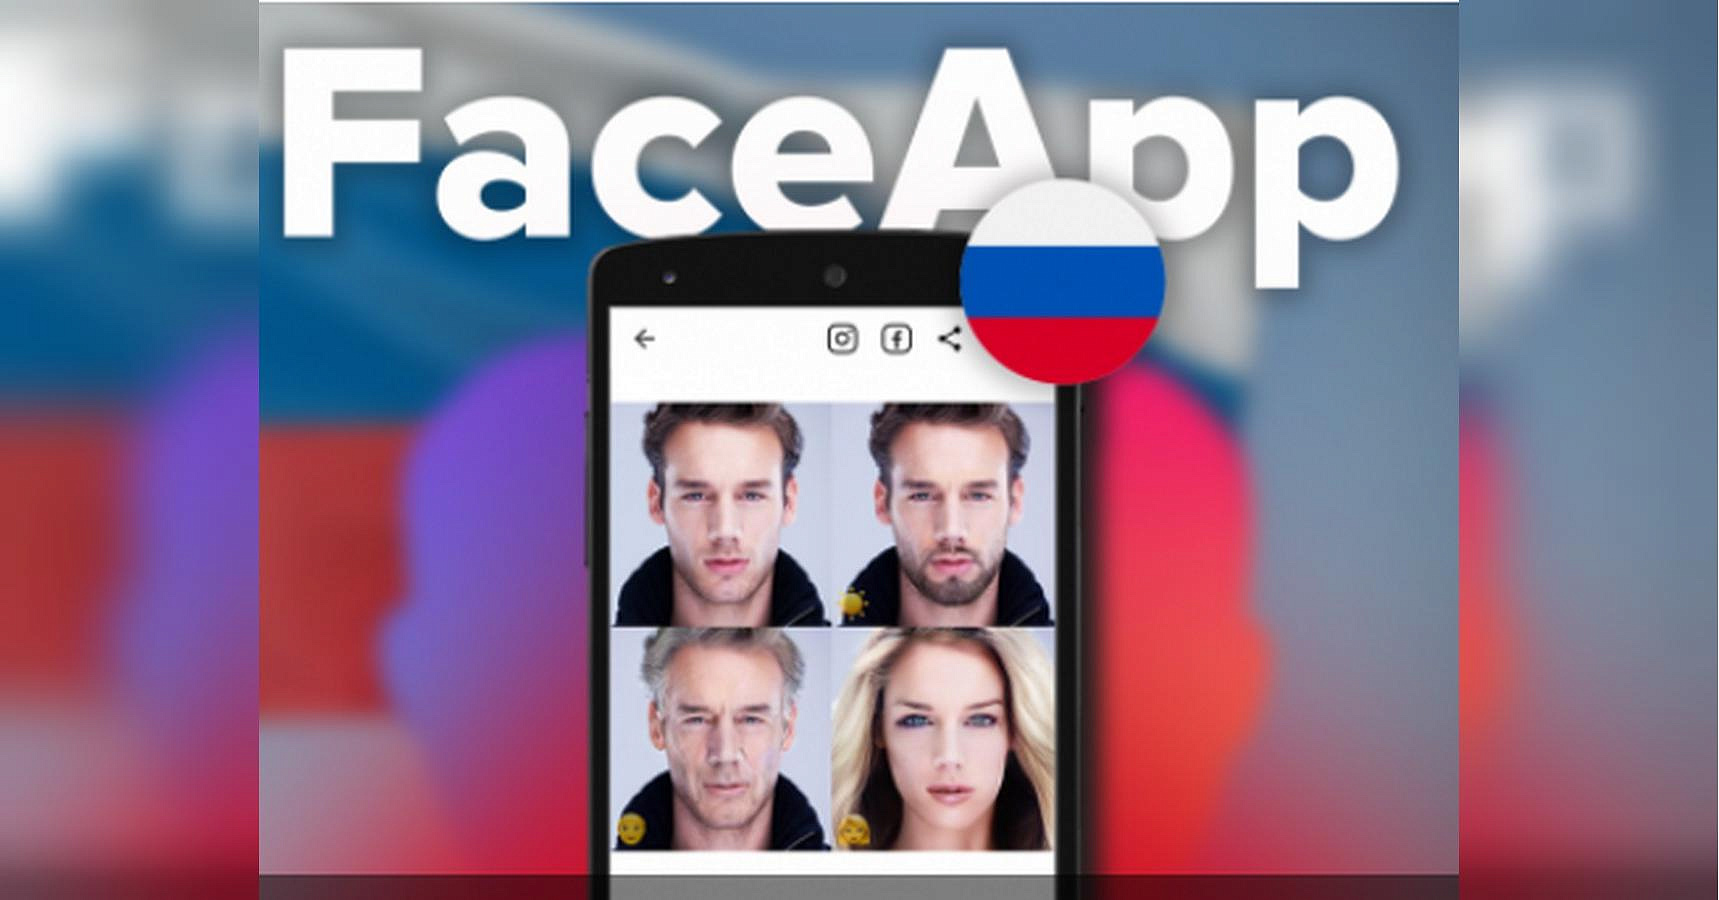 В США назвали Face App угрозой национальной безопасности